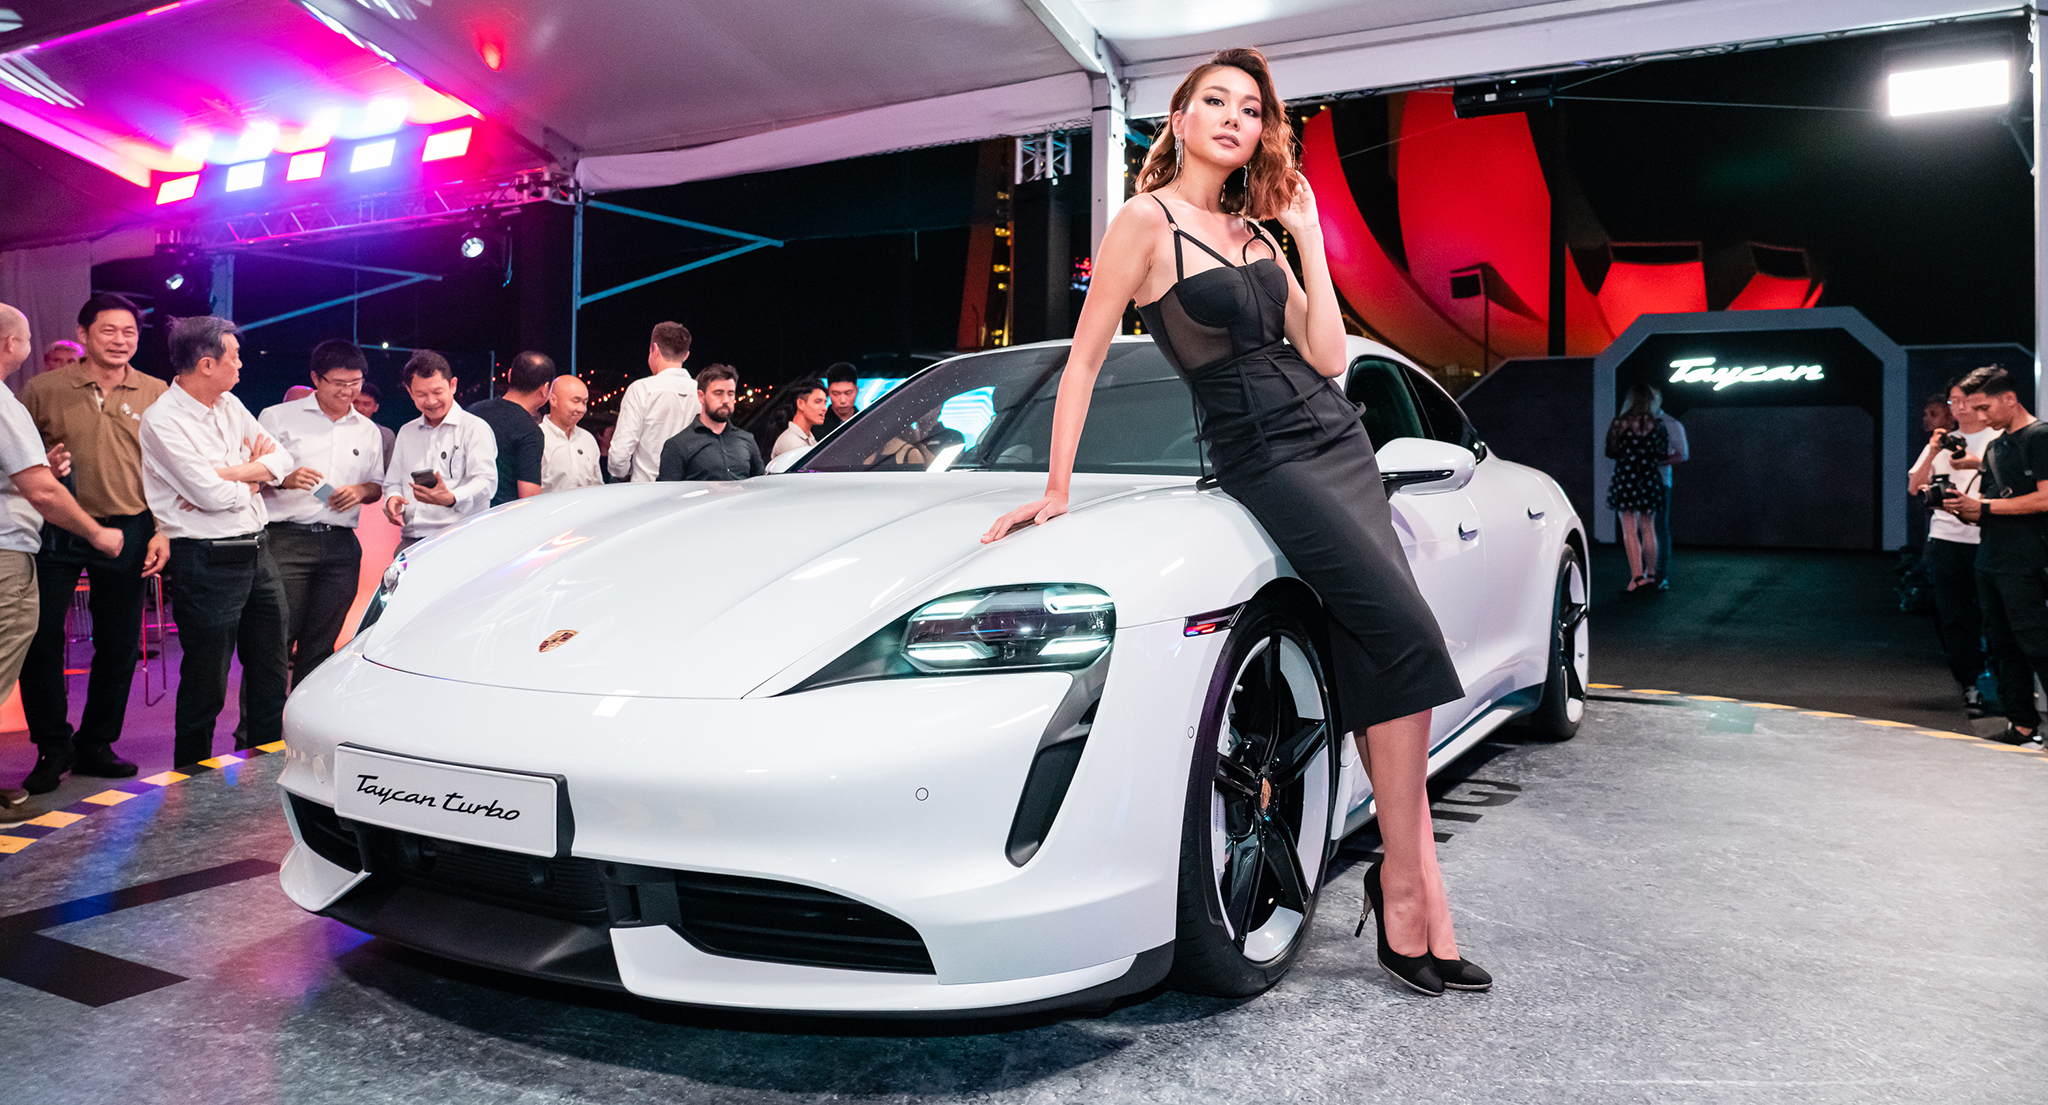 Màn ra mắt ngoạn mục của Porsche Taycan tại Châu Á - Thái Bình Dương